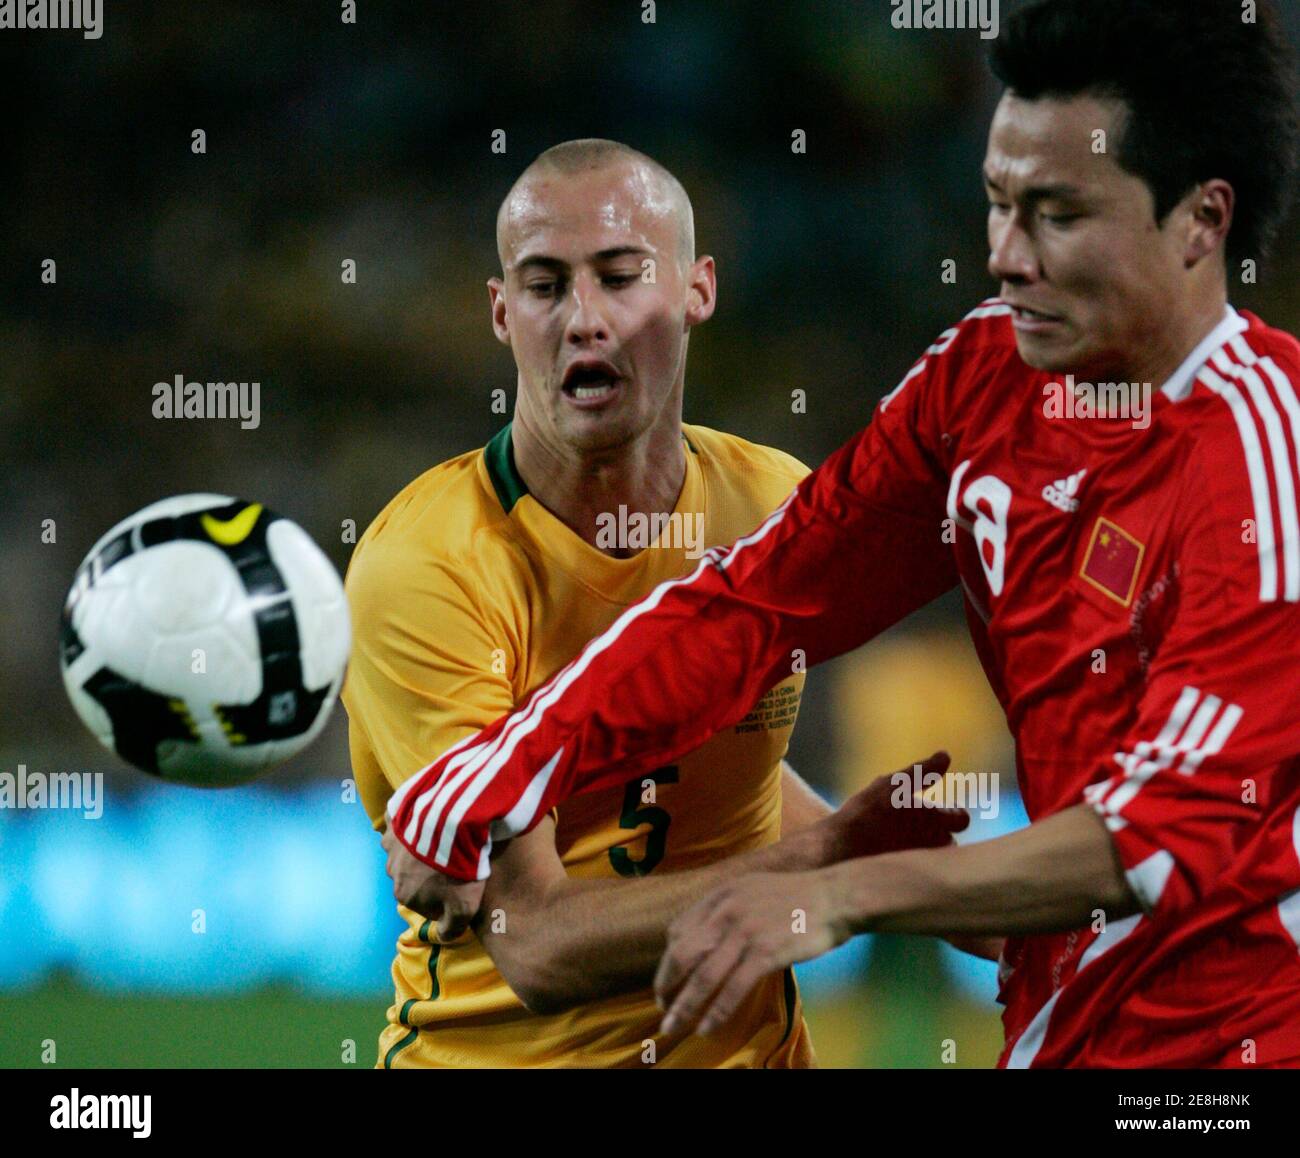 Chinas Gao Lin (R) Kämpfe um den Ball gegen Australiens Ruben Zadkovich während der 2010 FIFA World Cup Qualifier Fußballspiel in Sydney 22. Juni 2008. REUTERS / Willen Burgess (Australien) Stockfoto